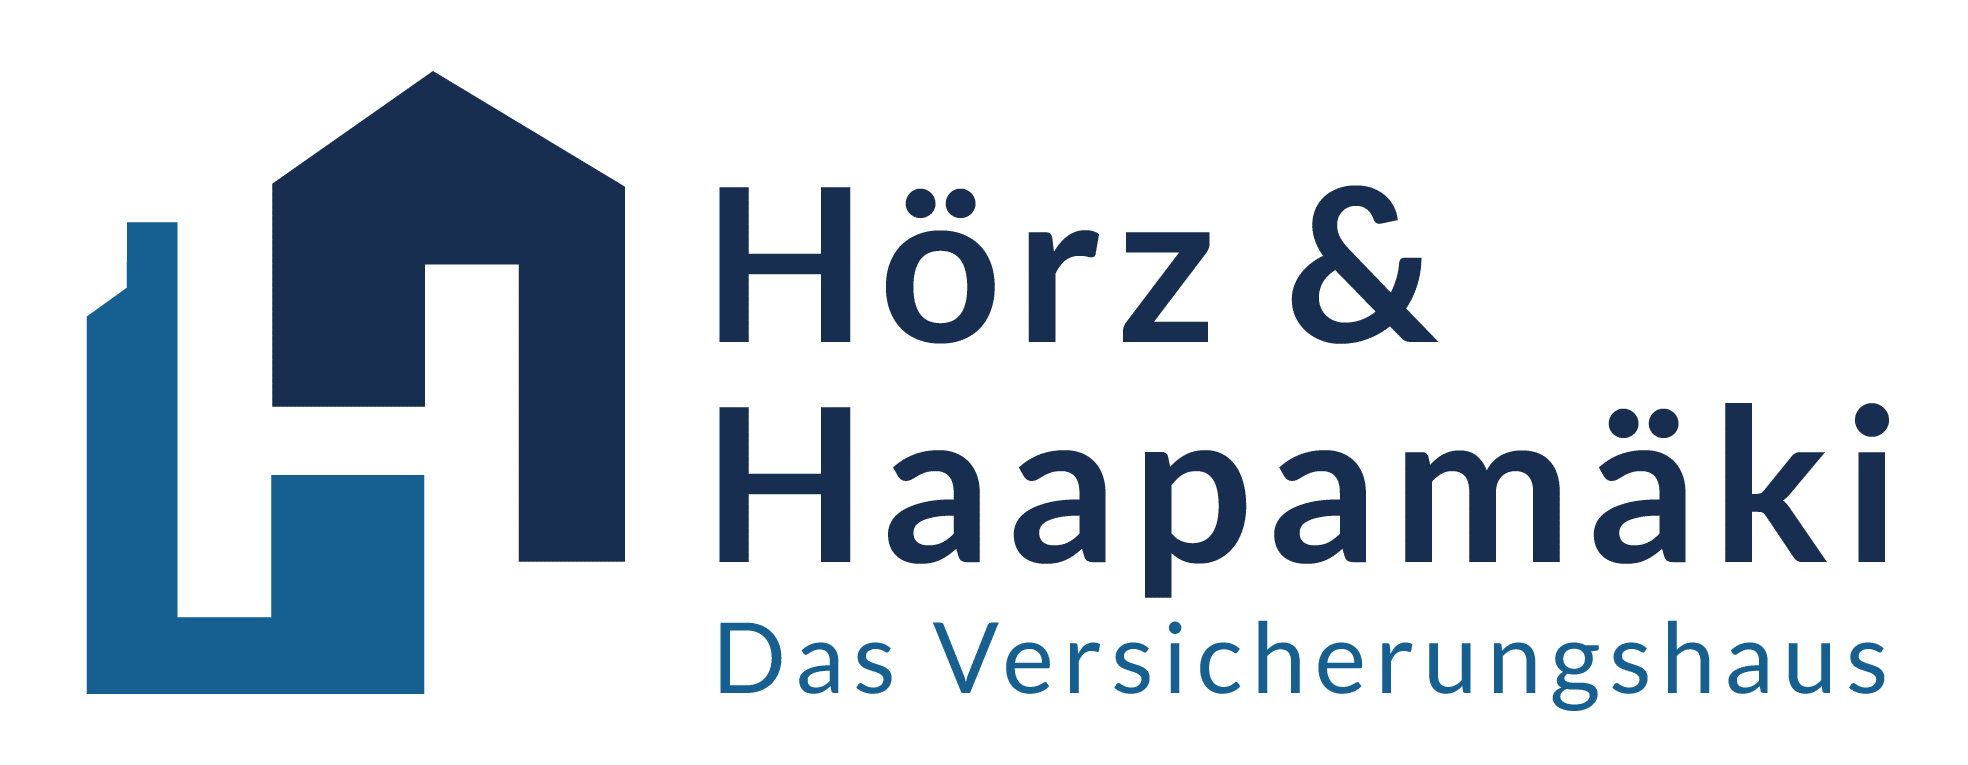 Hörz & Haapamäki – Das Versicherungshaus Logo